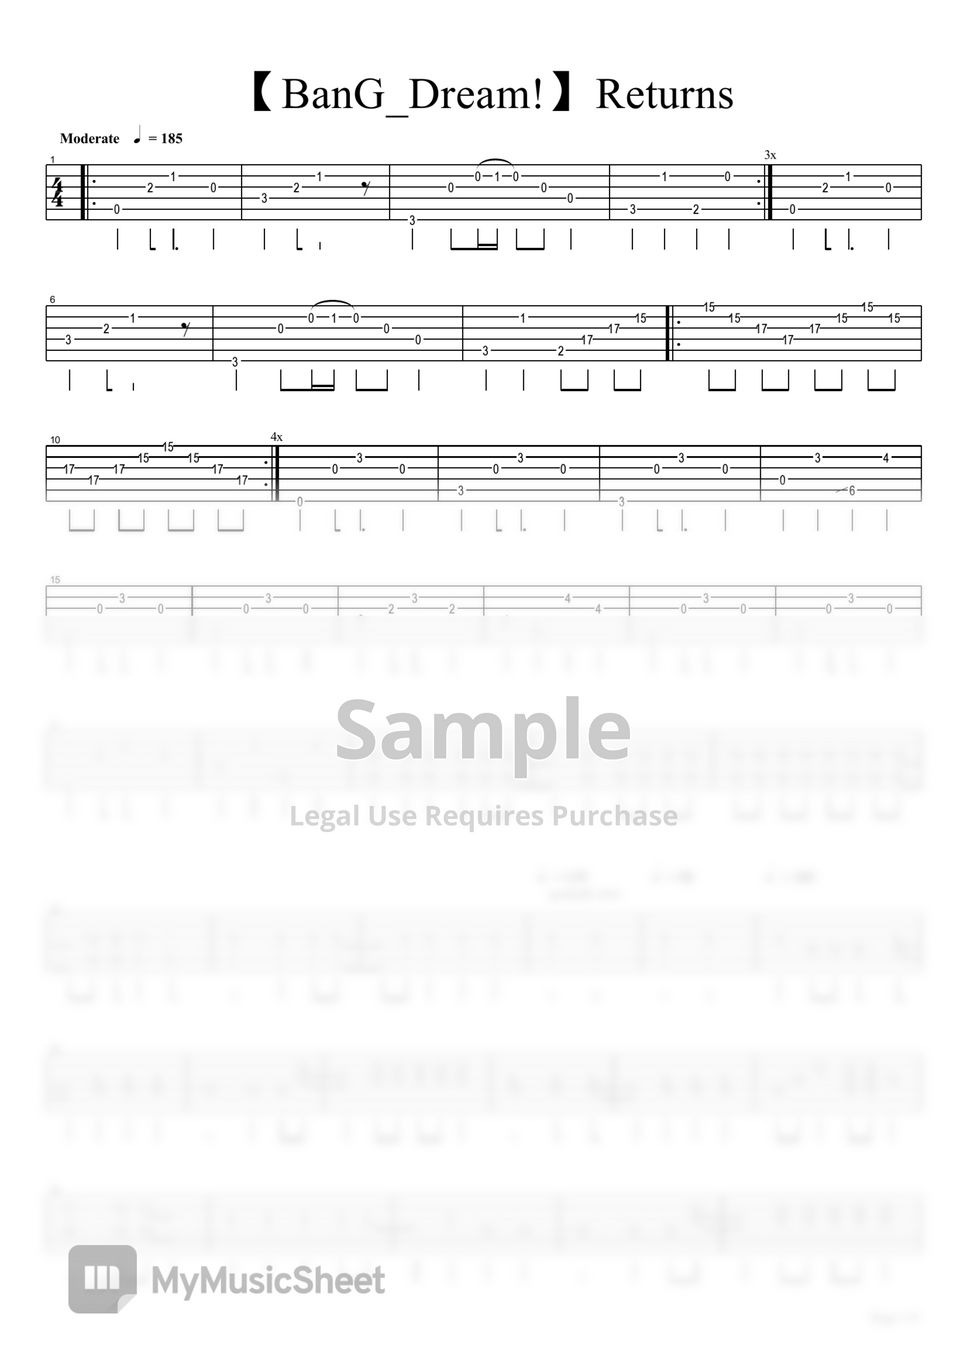 BanG Dream - Returns guitar tab arrangement by eric lo